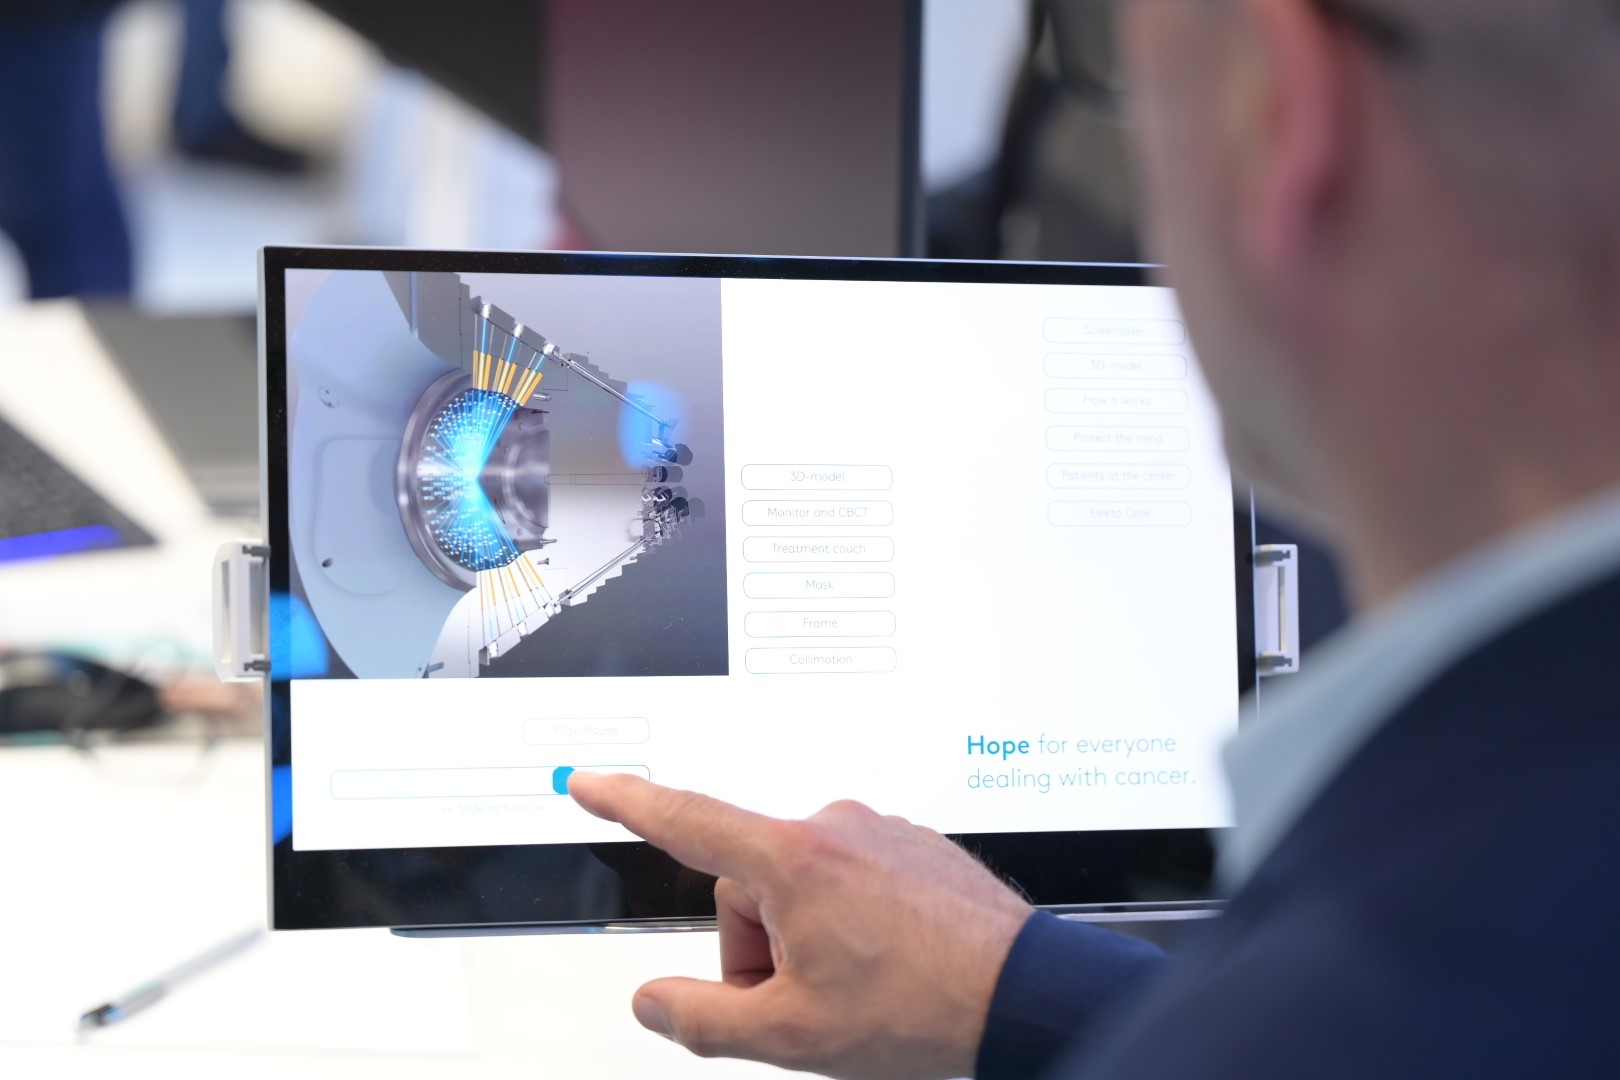 An expert demonstrating Elekta software on a touch screen